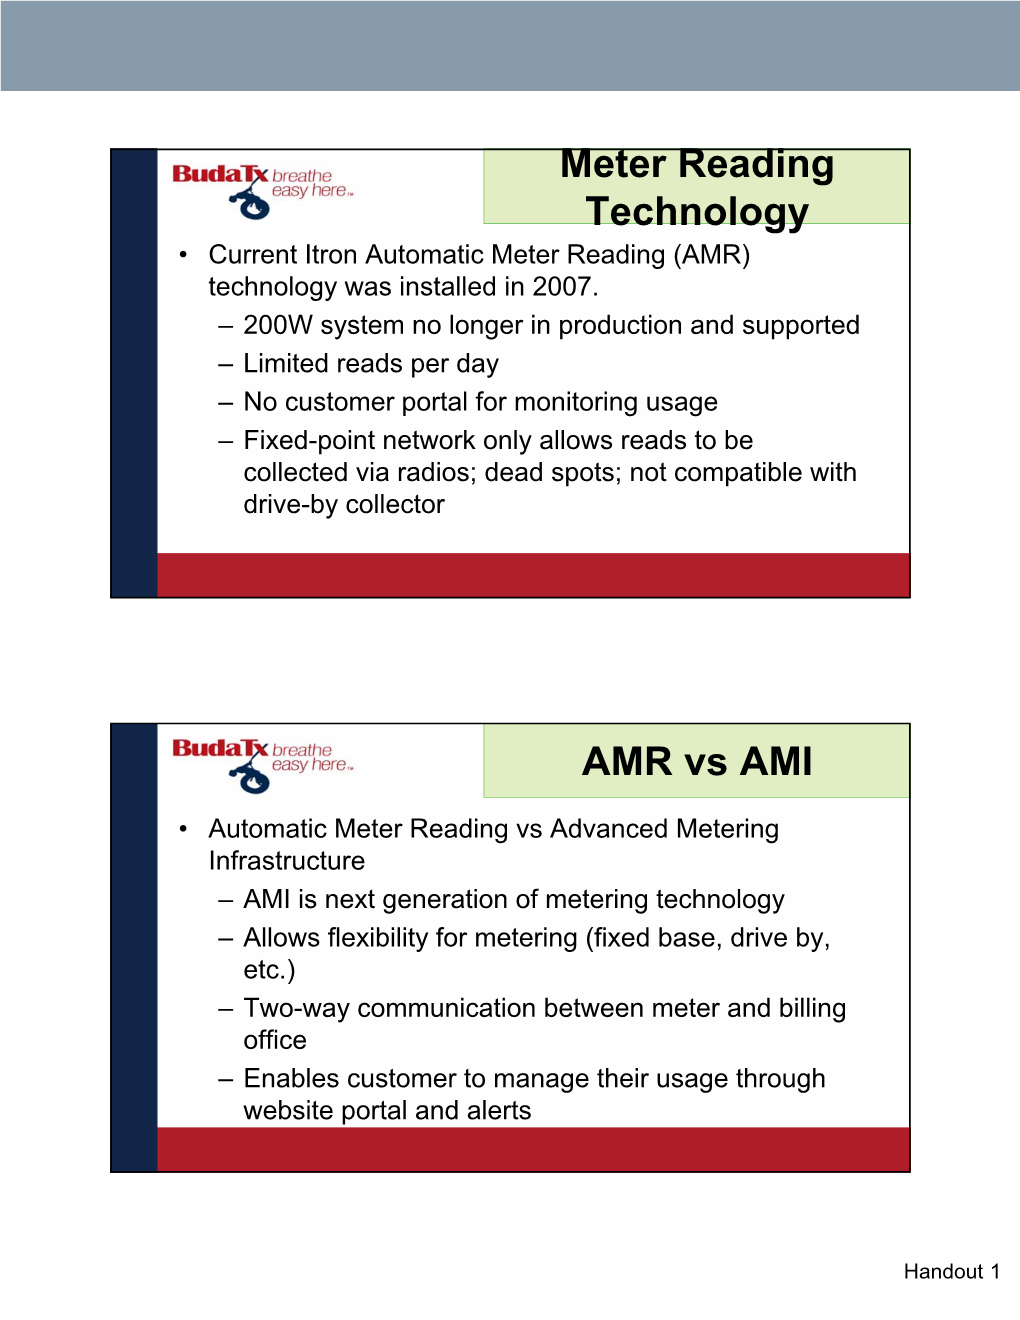 Meter Reading Technology AMR Vs